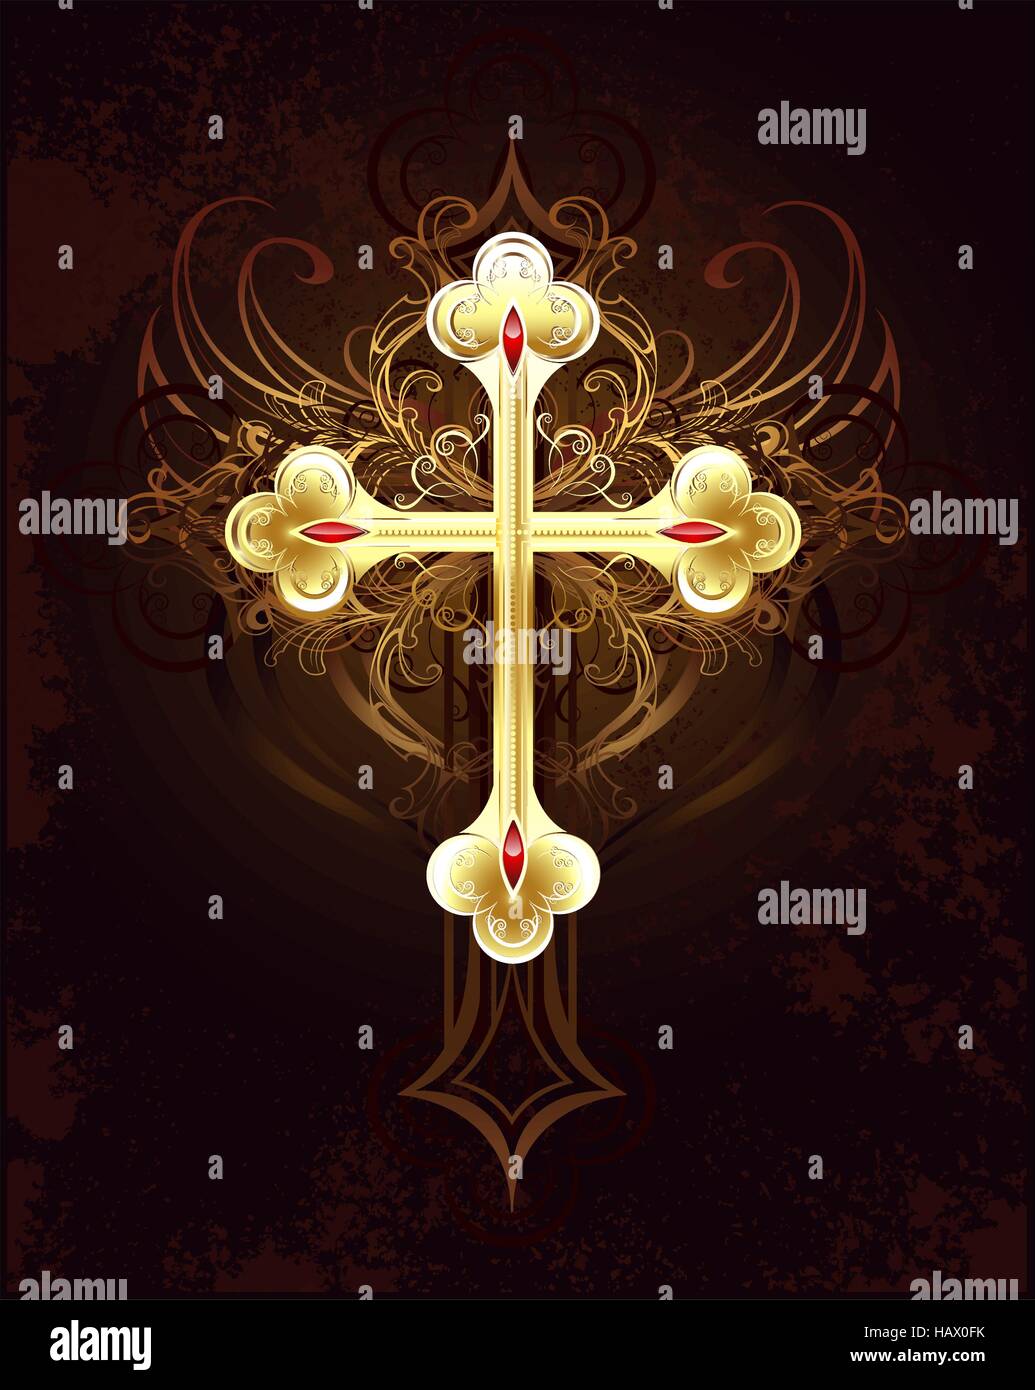 Goldfiligran Kreuz auf einem braunen dunklen Hintergrund getragen. Stock Vektor